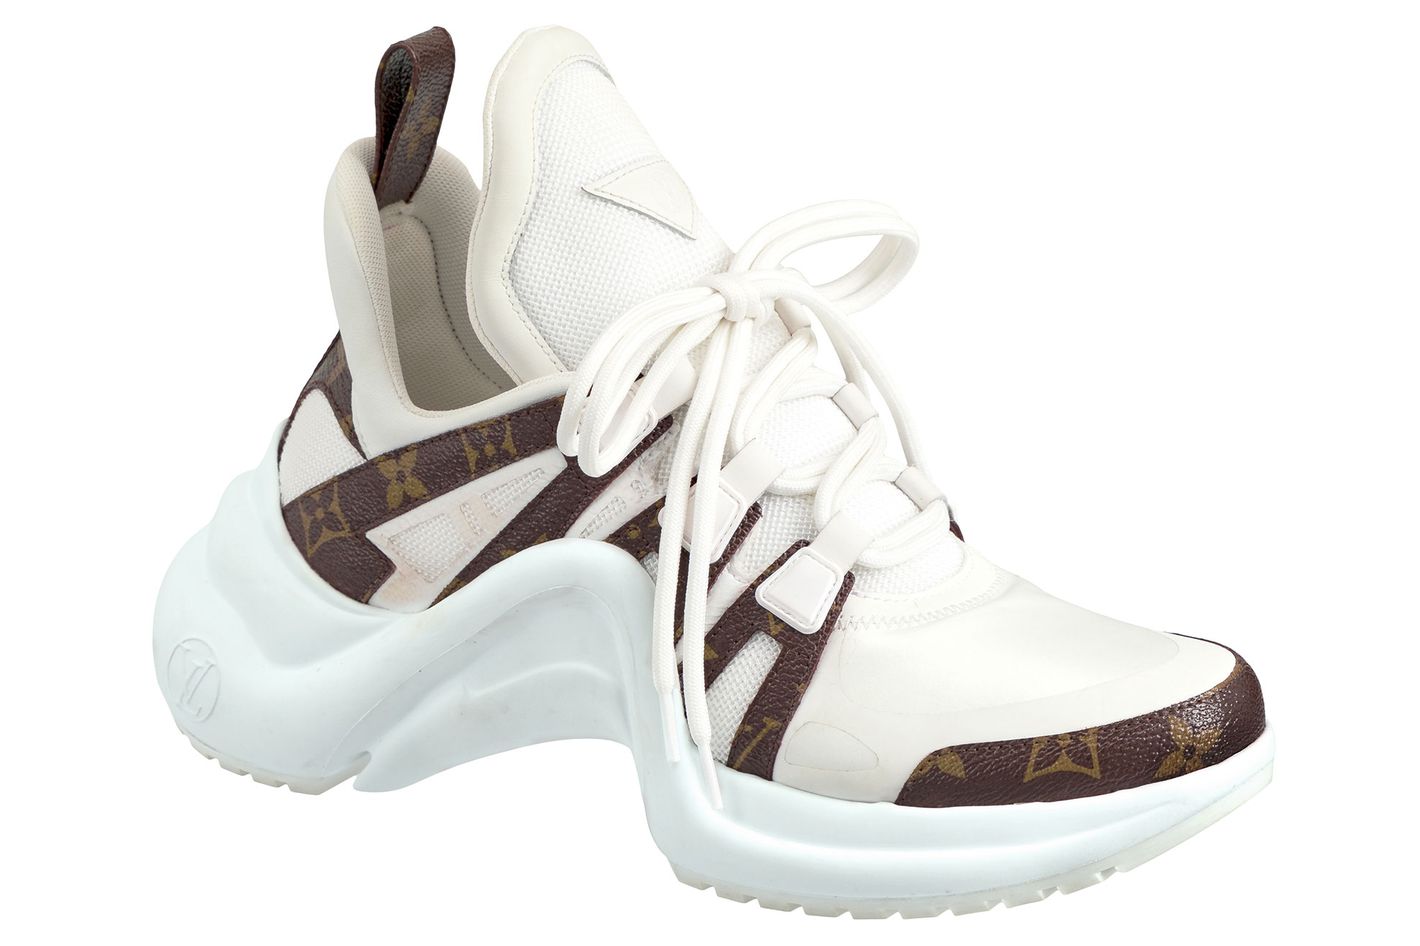 Louis Vuitton, Shoes, Louis Vuitton Arch Sneakers